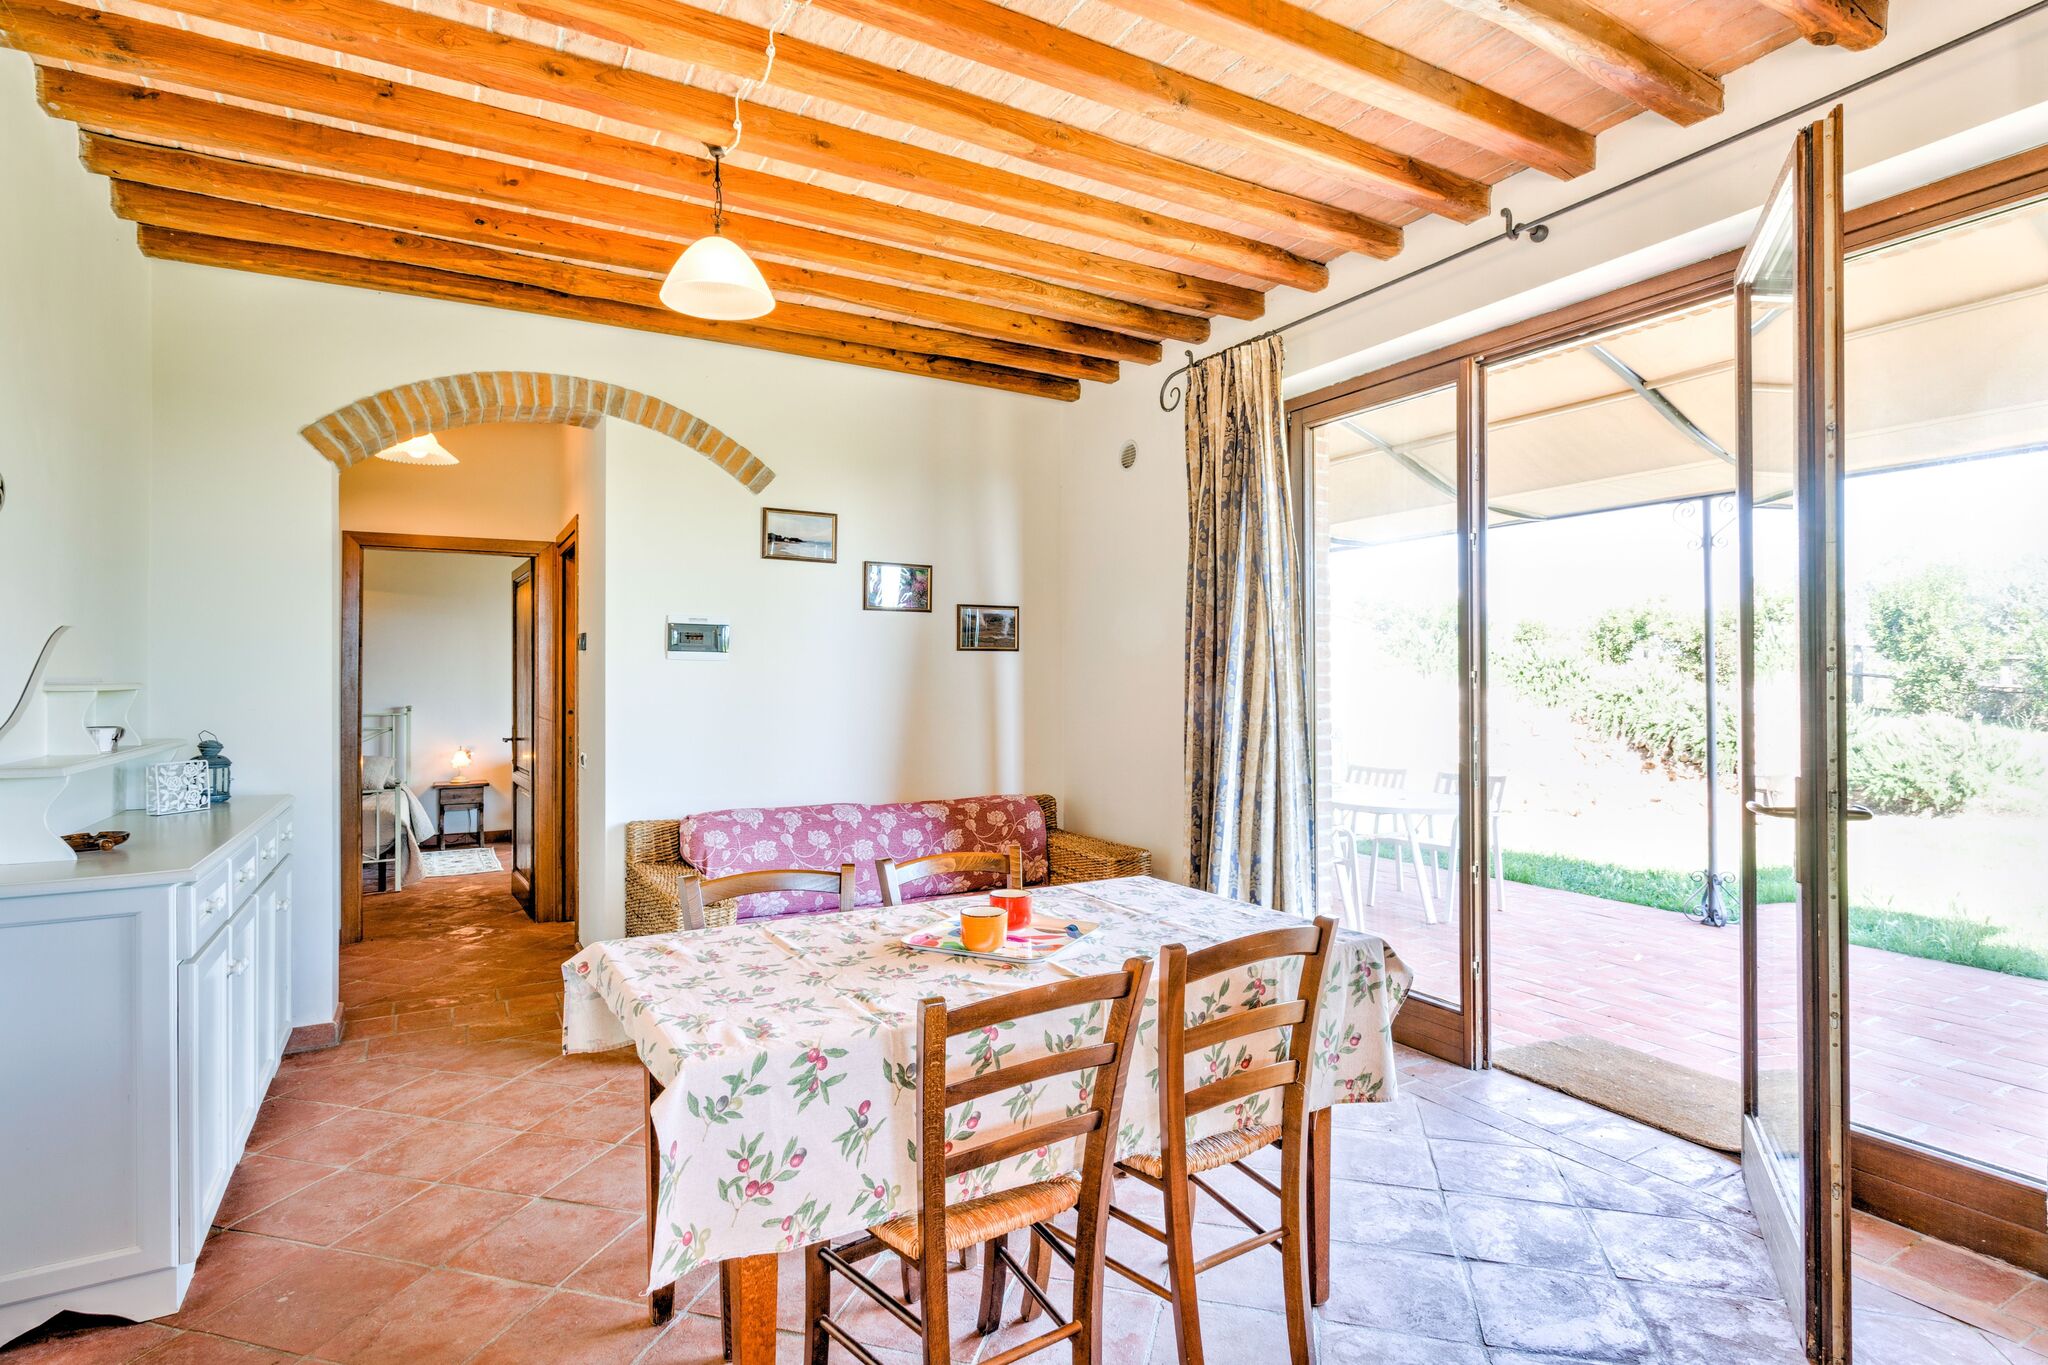 Maison de vacances privée à Suvereto Toscane avec oliviers